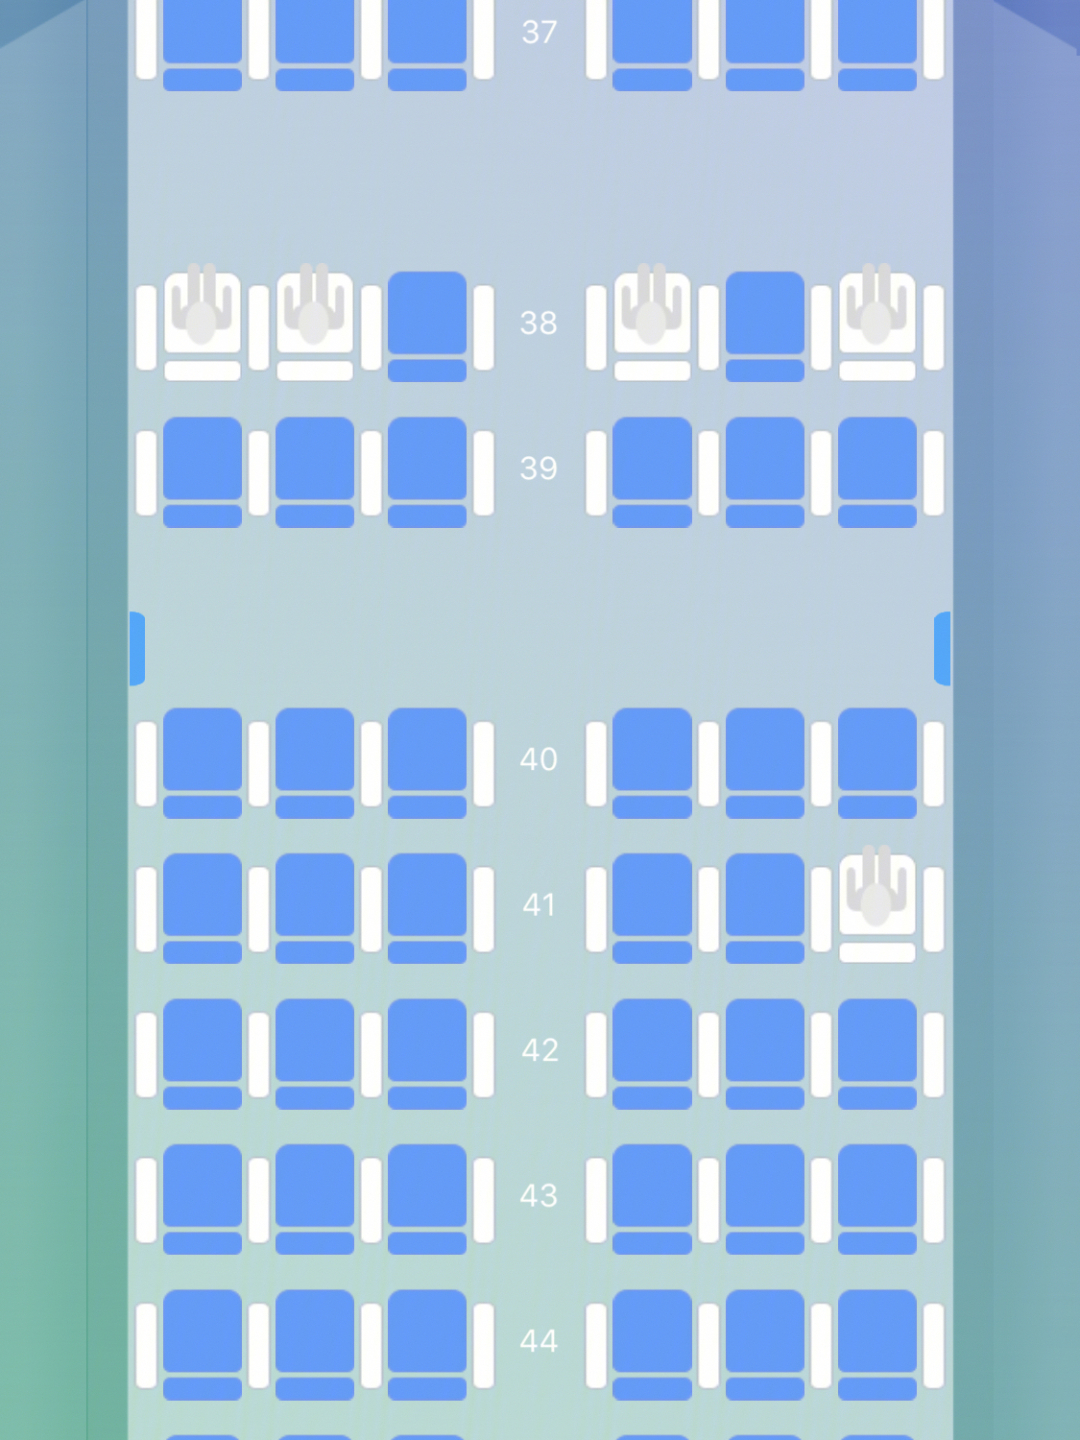 川航空客320最佳座位图图片